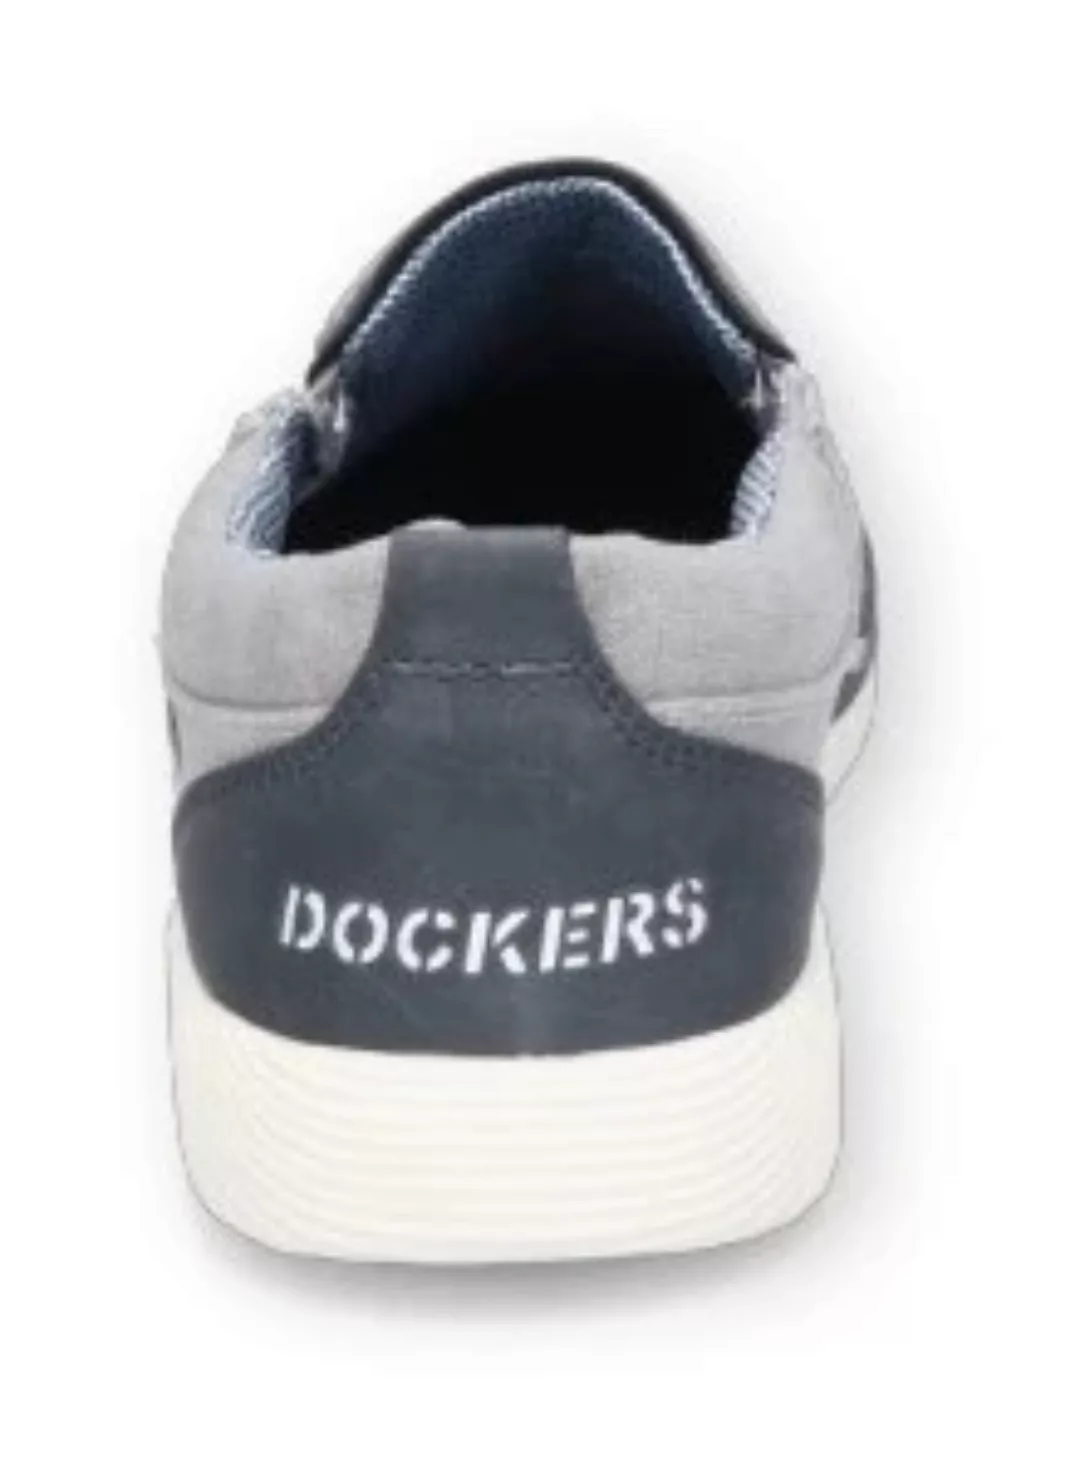 Dockers by Gerli Slipper, Slip-On Sneaker, Freizeitschuh, Schlupfschuh, Str günstig online kaufen